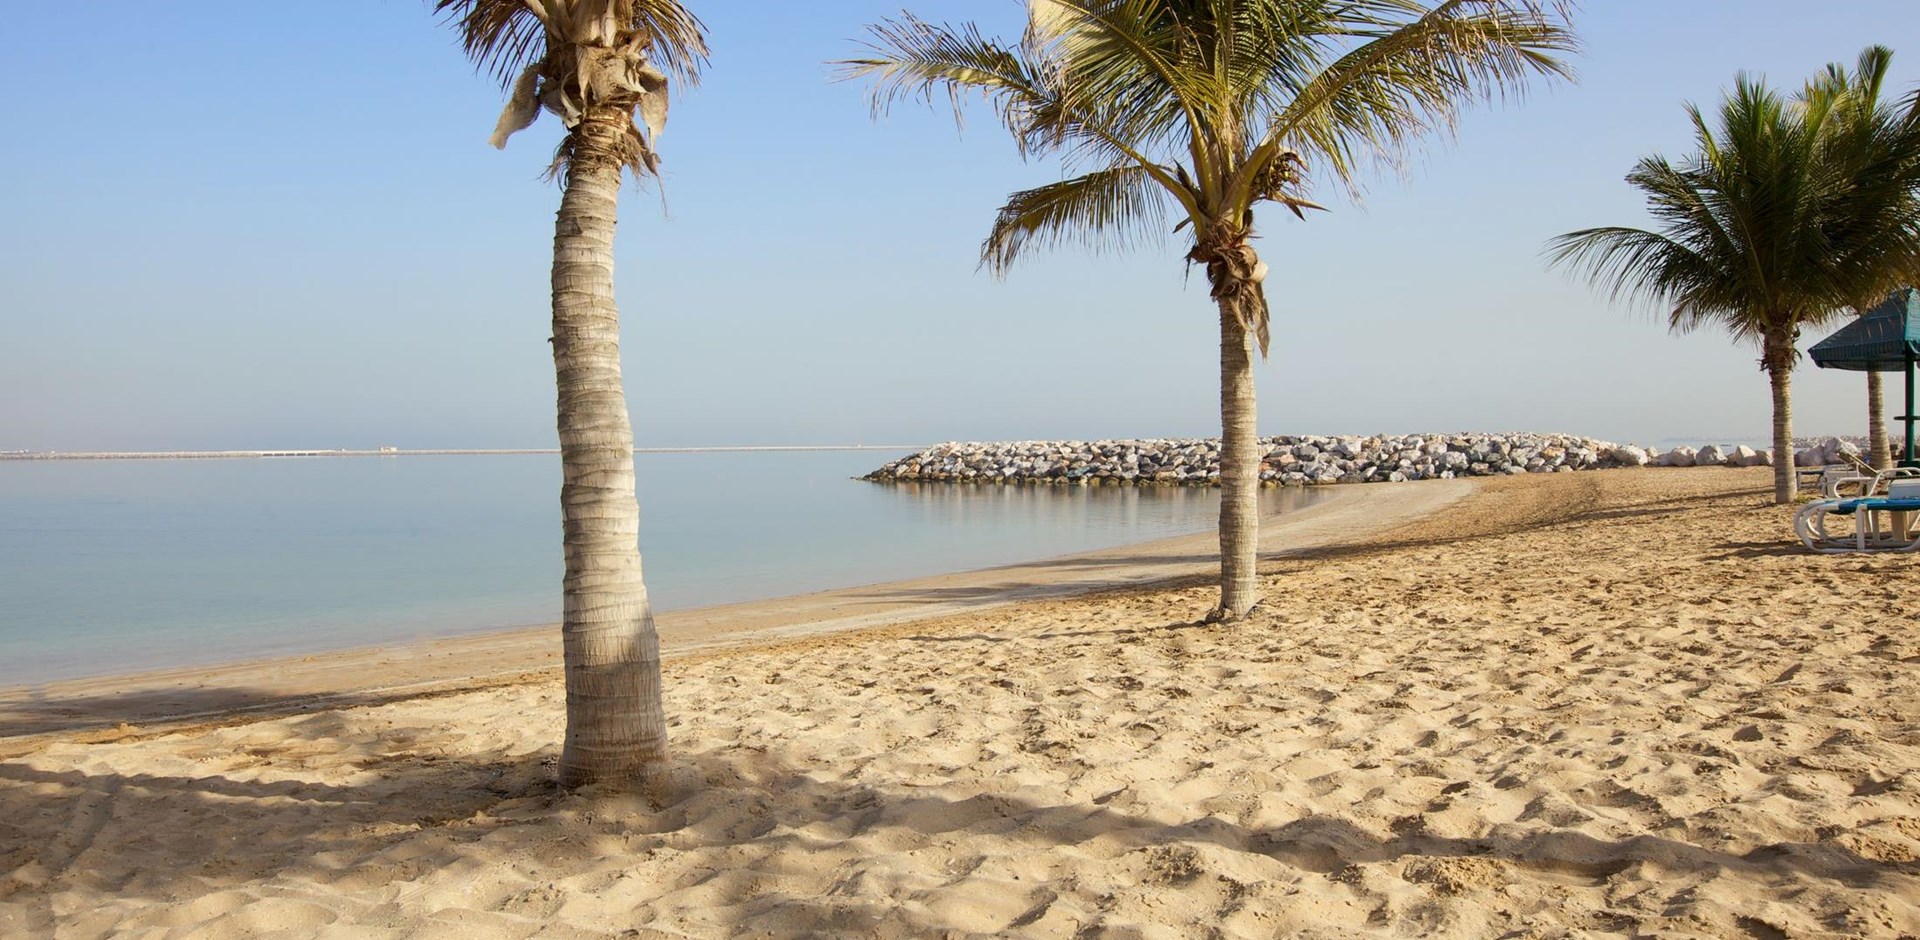 003670_Beach_Ras Al Khaimah_Ras Al Khaimah Tourism Development Authority 001.jpg-Hybris